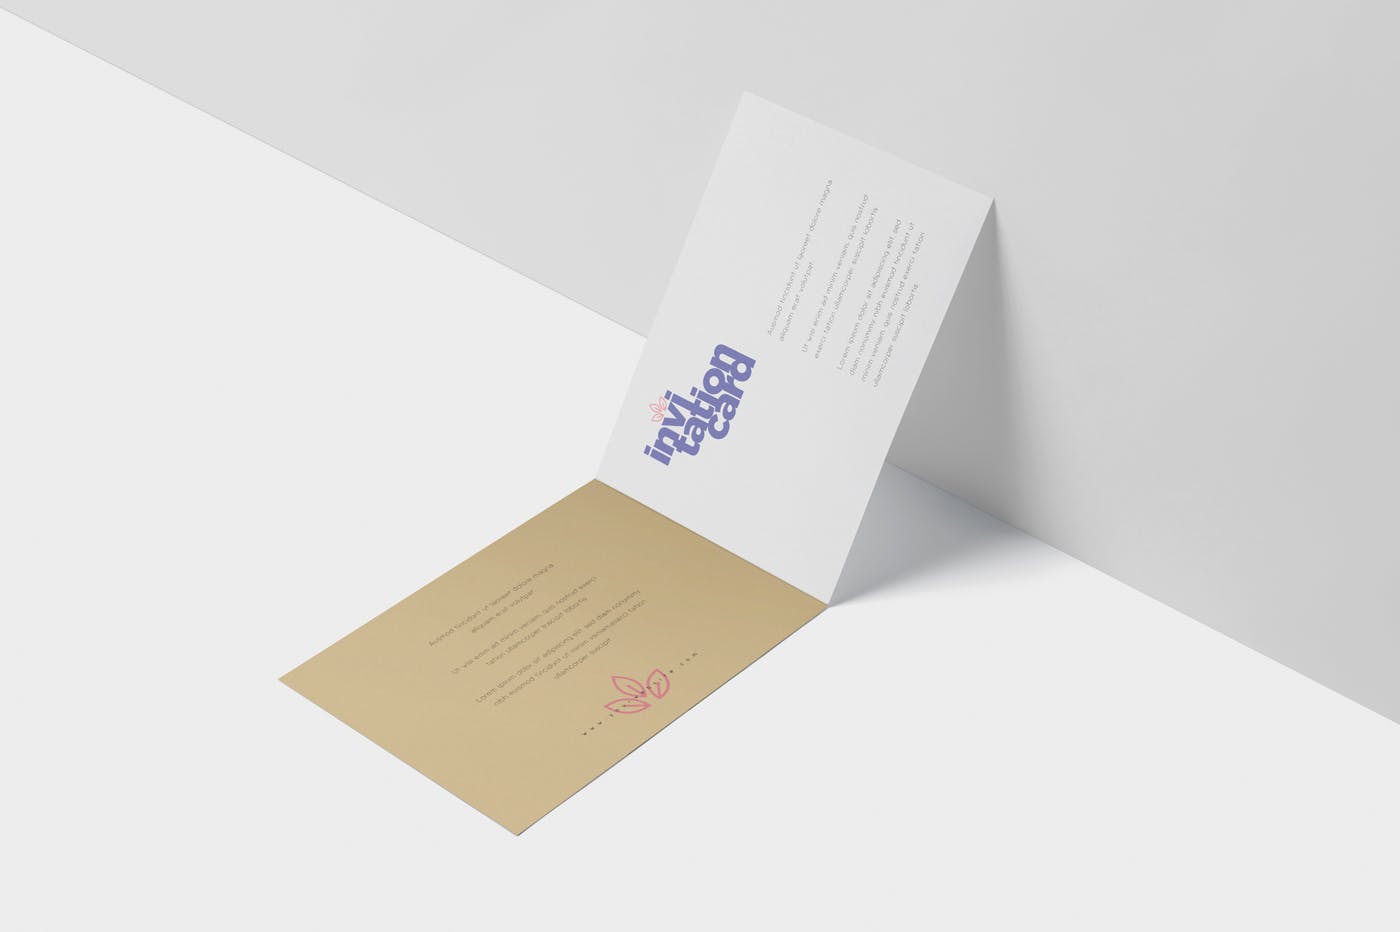 创意邀请卡/邀请函设计图样机蚂蚁素材精选 Invitation Card Mock-Up Set插图(4)